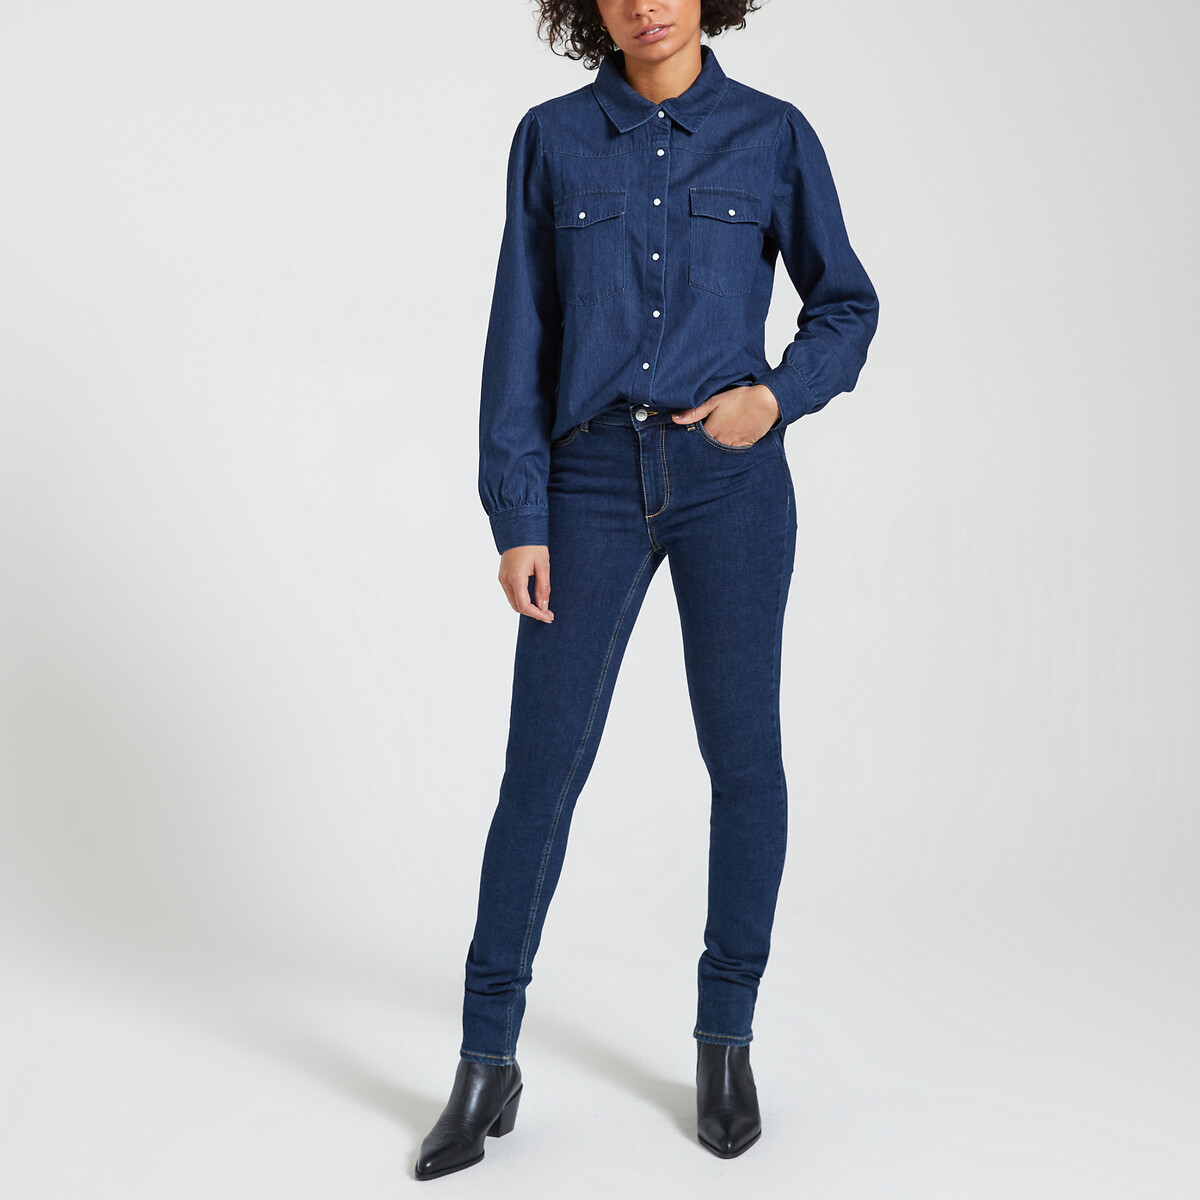 Рубашка из джинсовой ткани с длинными рукавами  XL синий LaRedoute, размер XL - фото 2